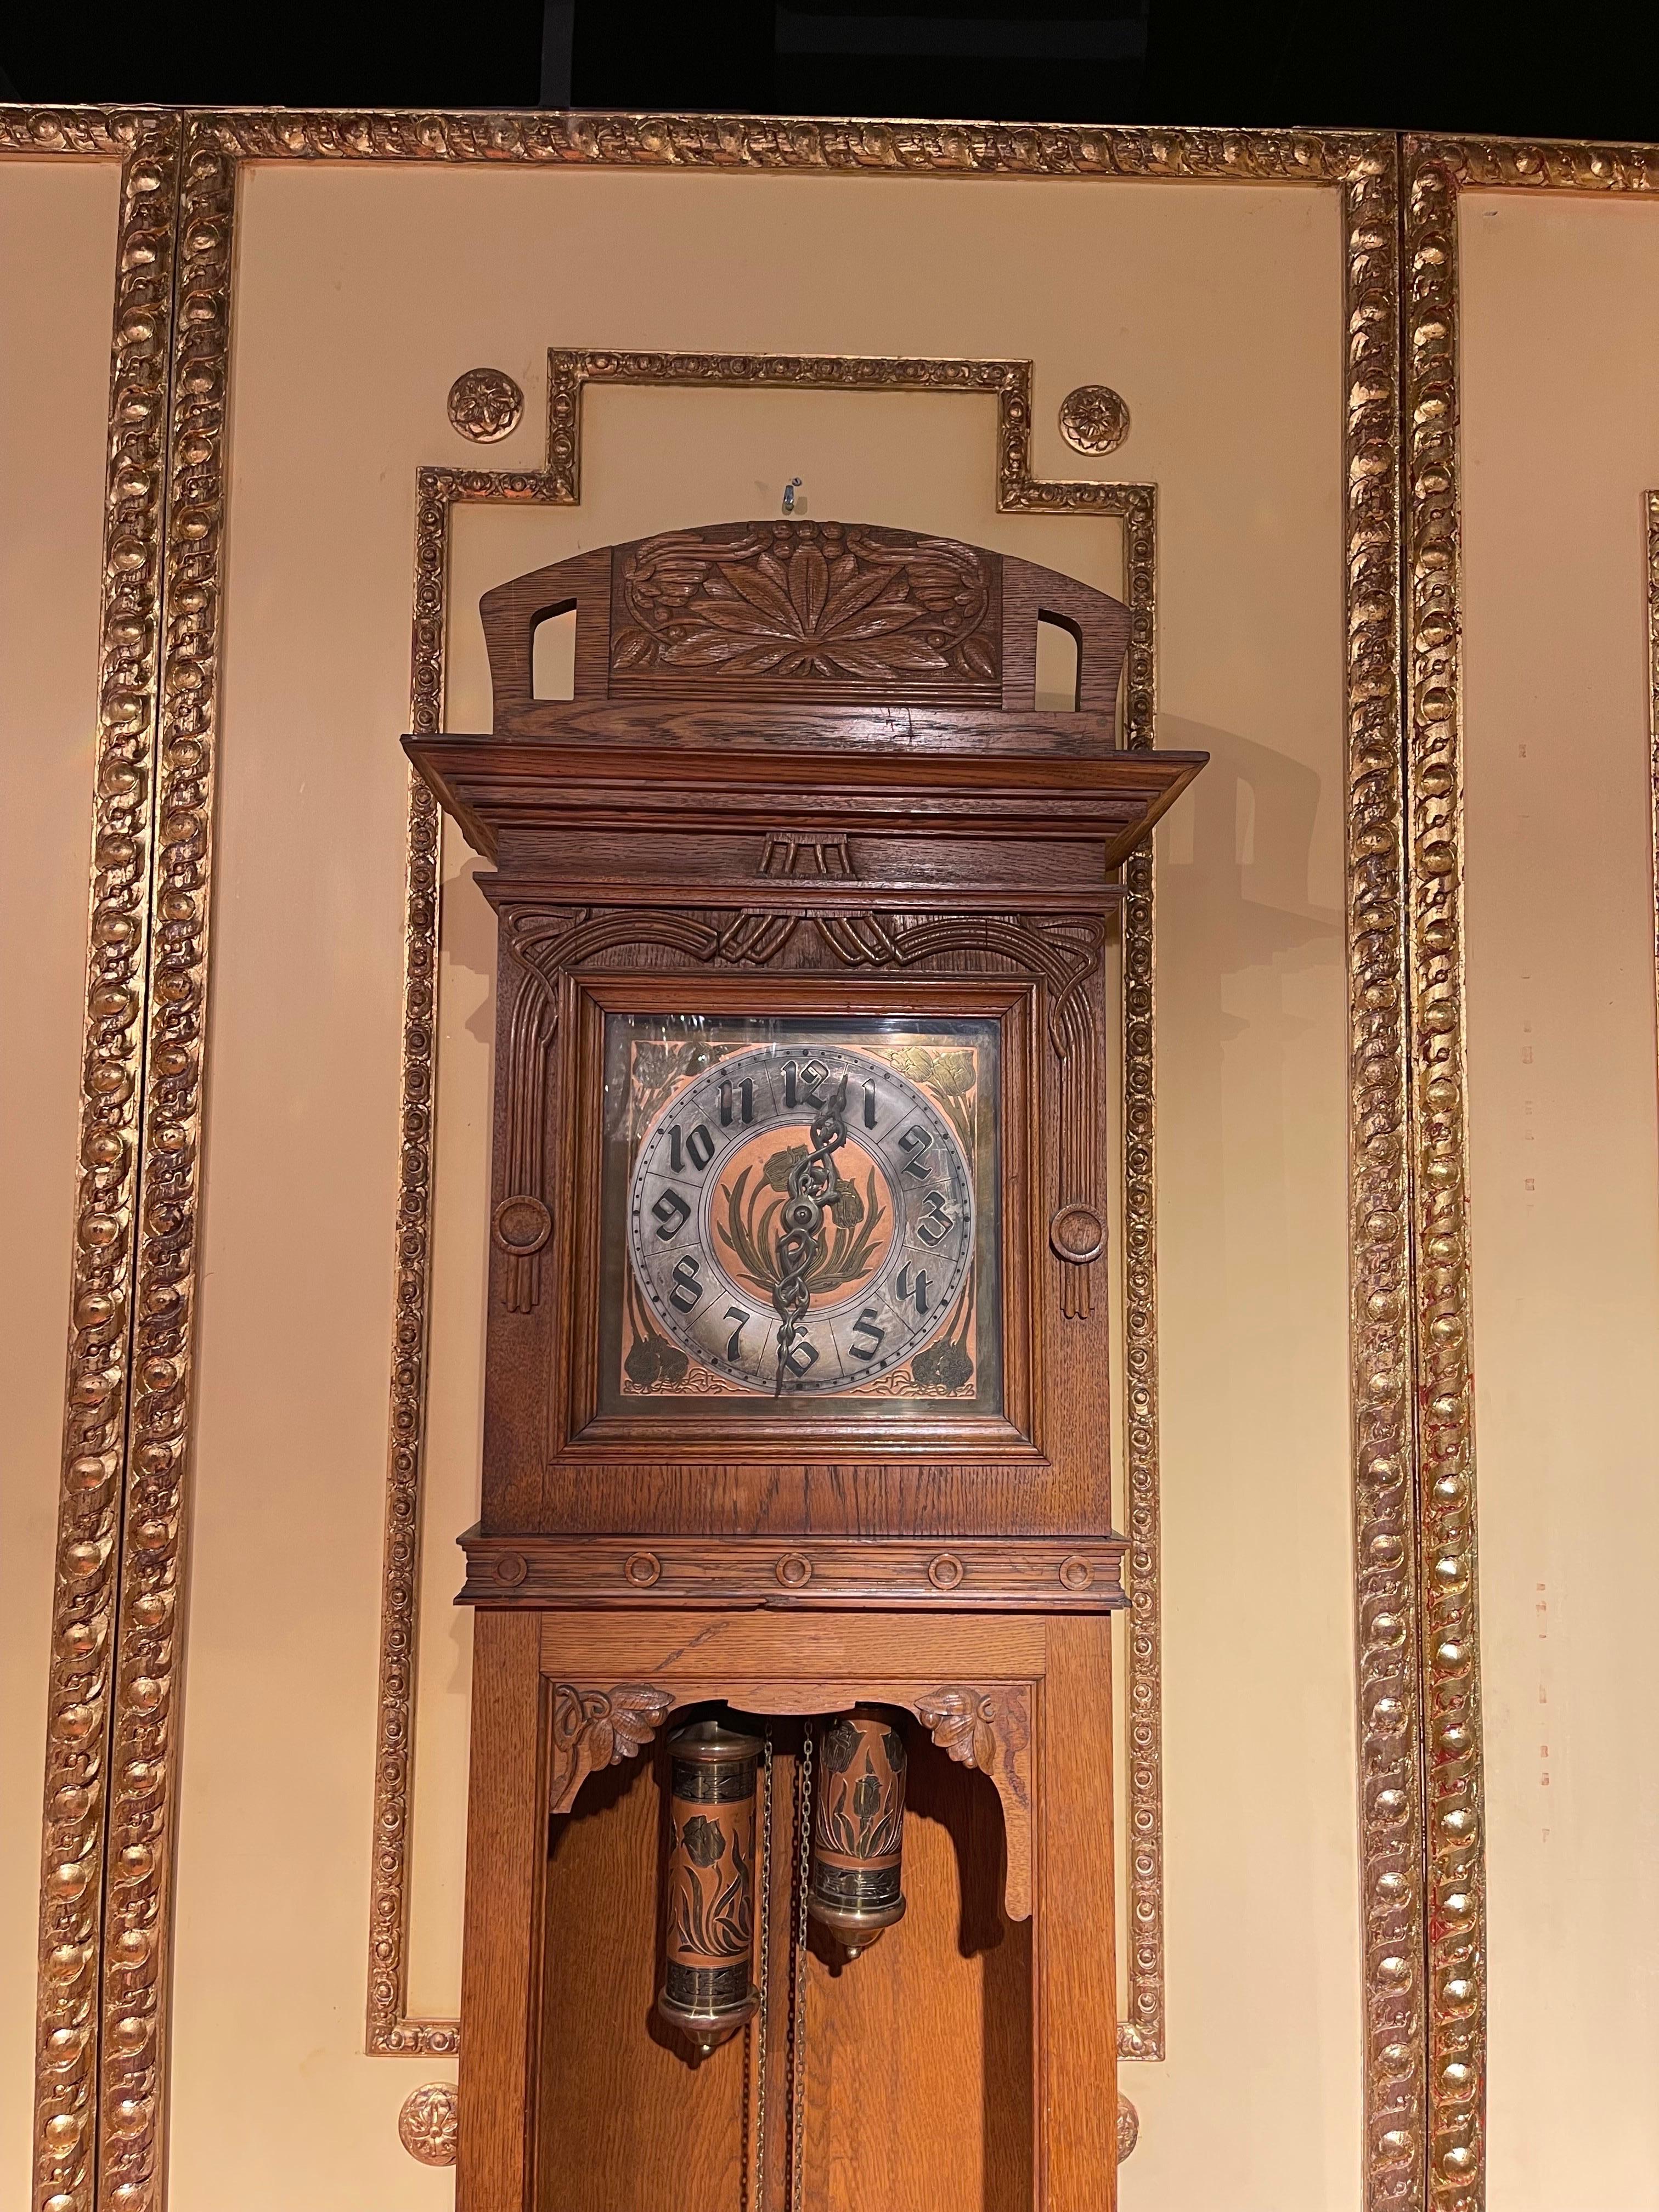 antique german made grandfather clocks